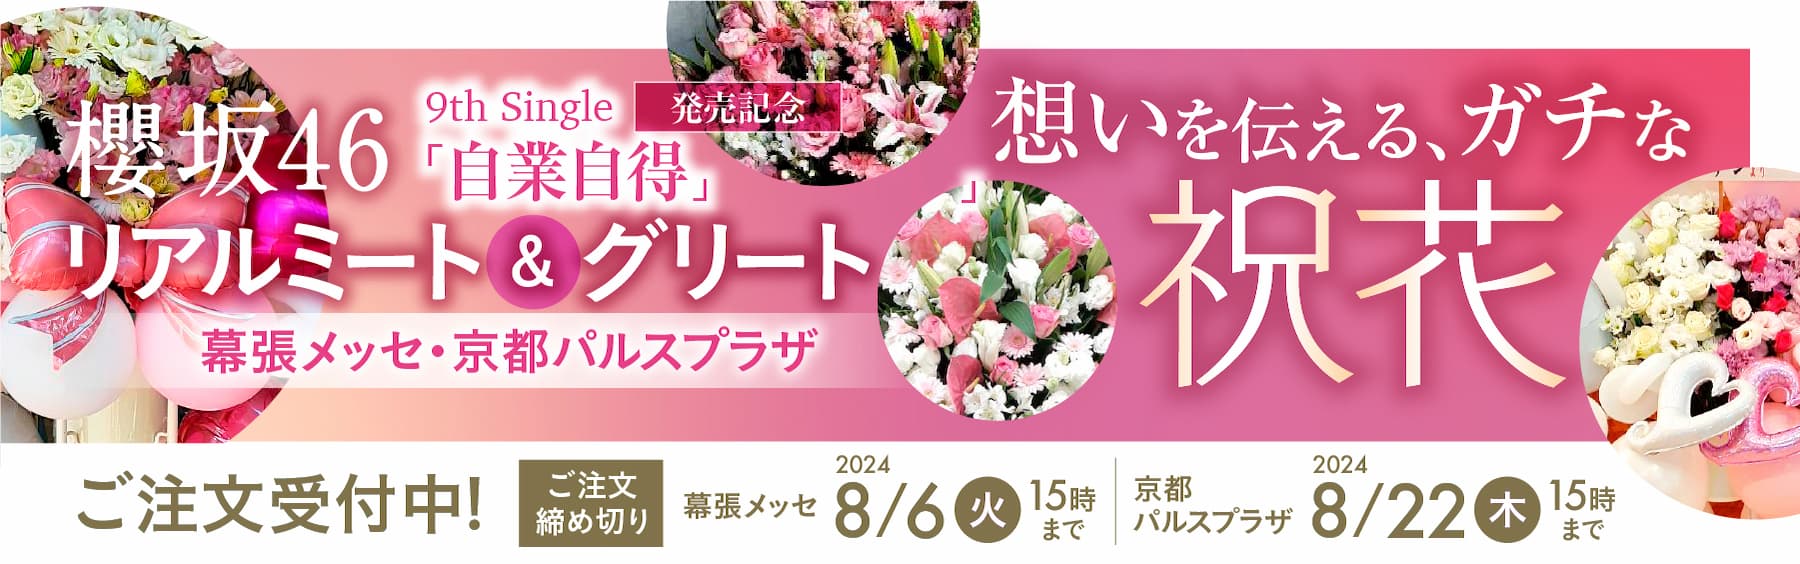 特集: 櫻坂46【花助】祝花・厳選花屋から全国対応